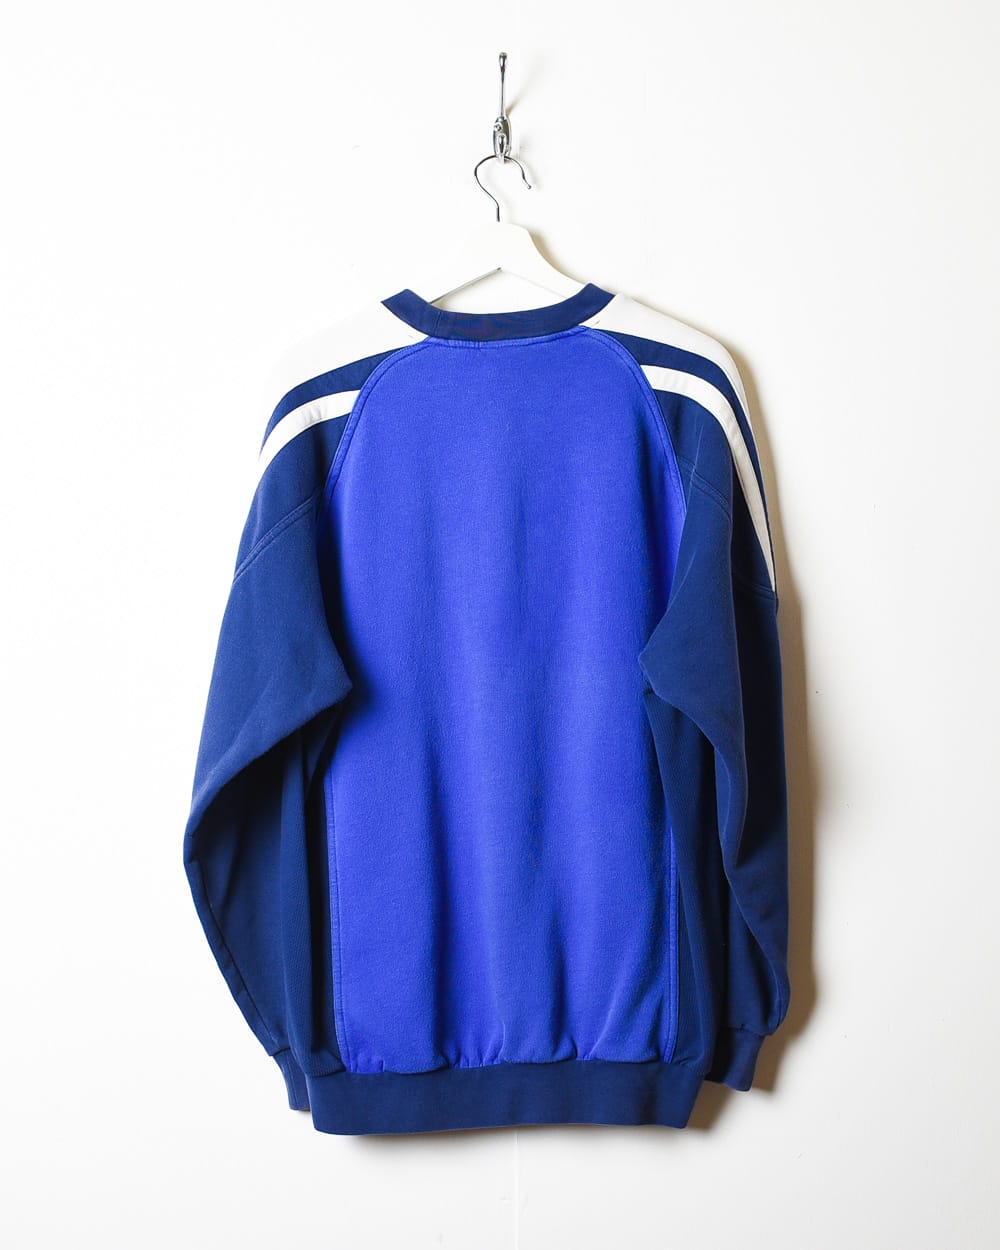 Blue Adidas Bath Rugby Sweatshirt - Medium